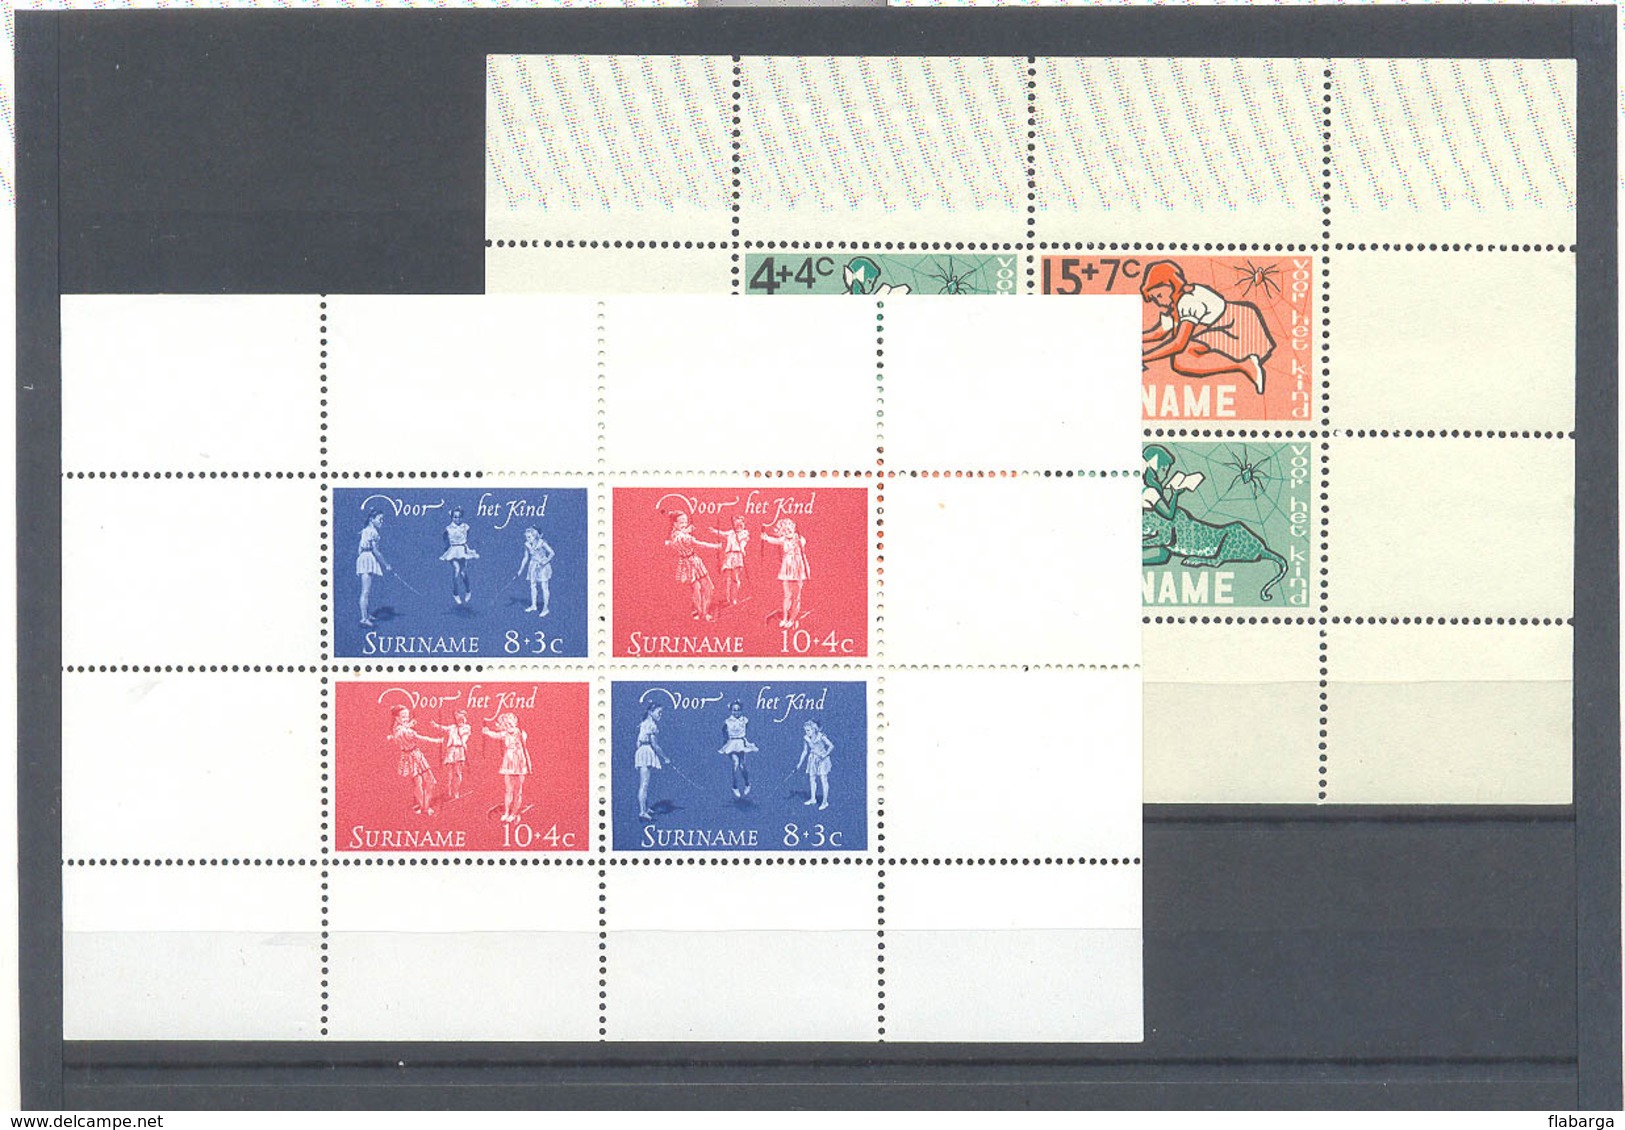 Importante lote de sellos de varios años